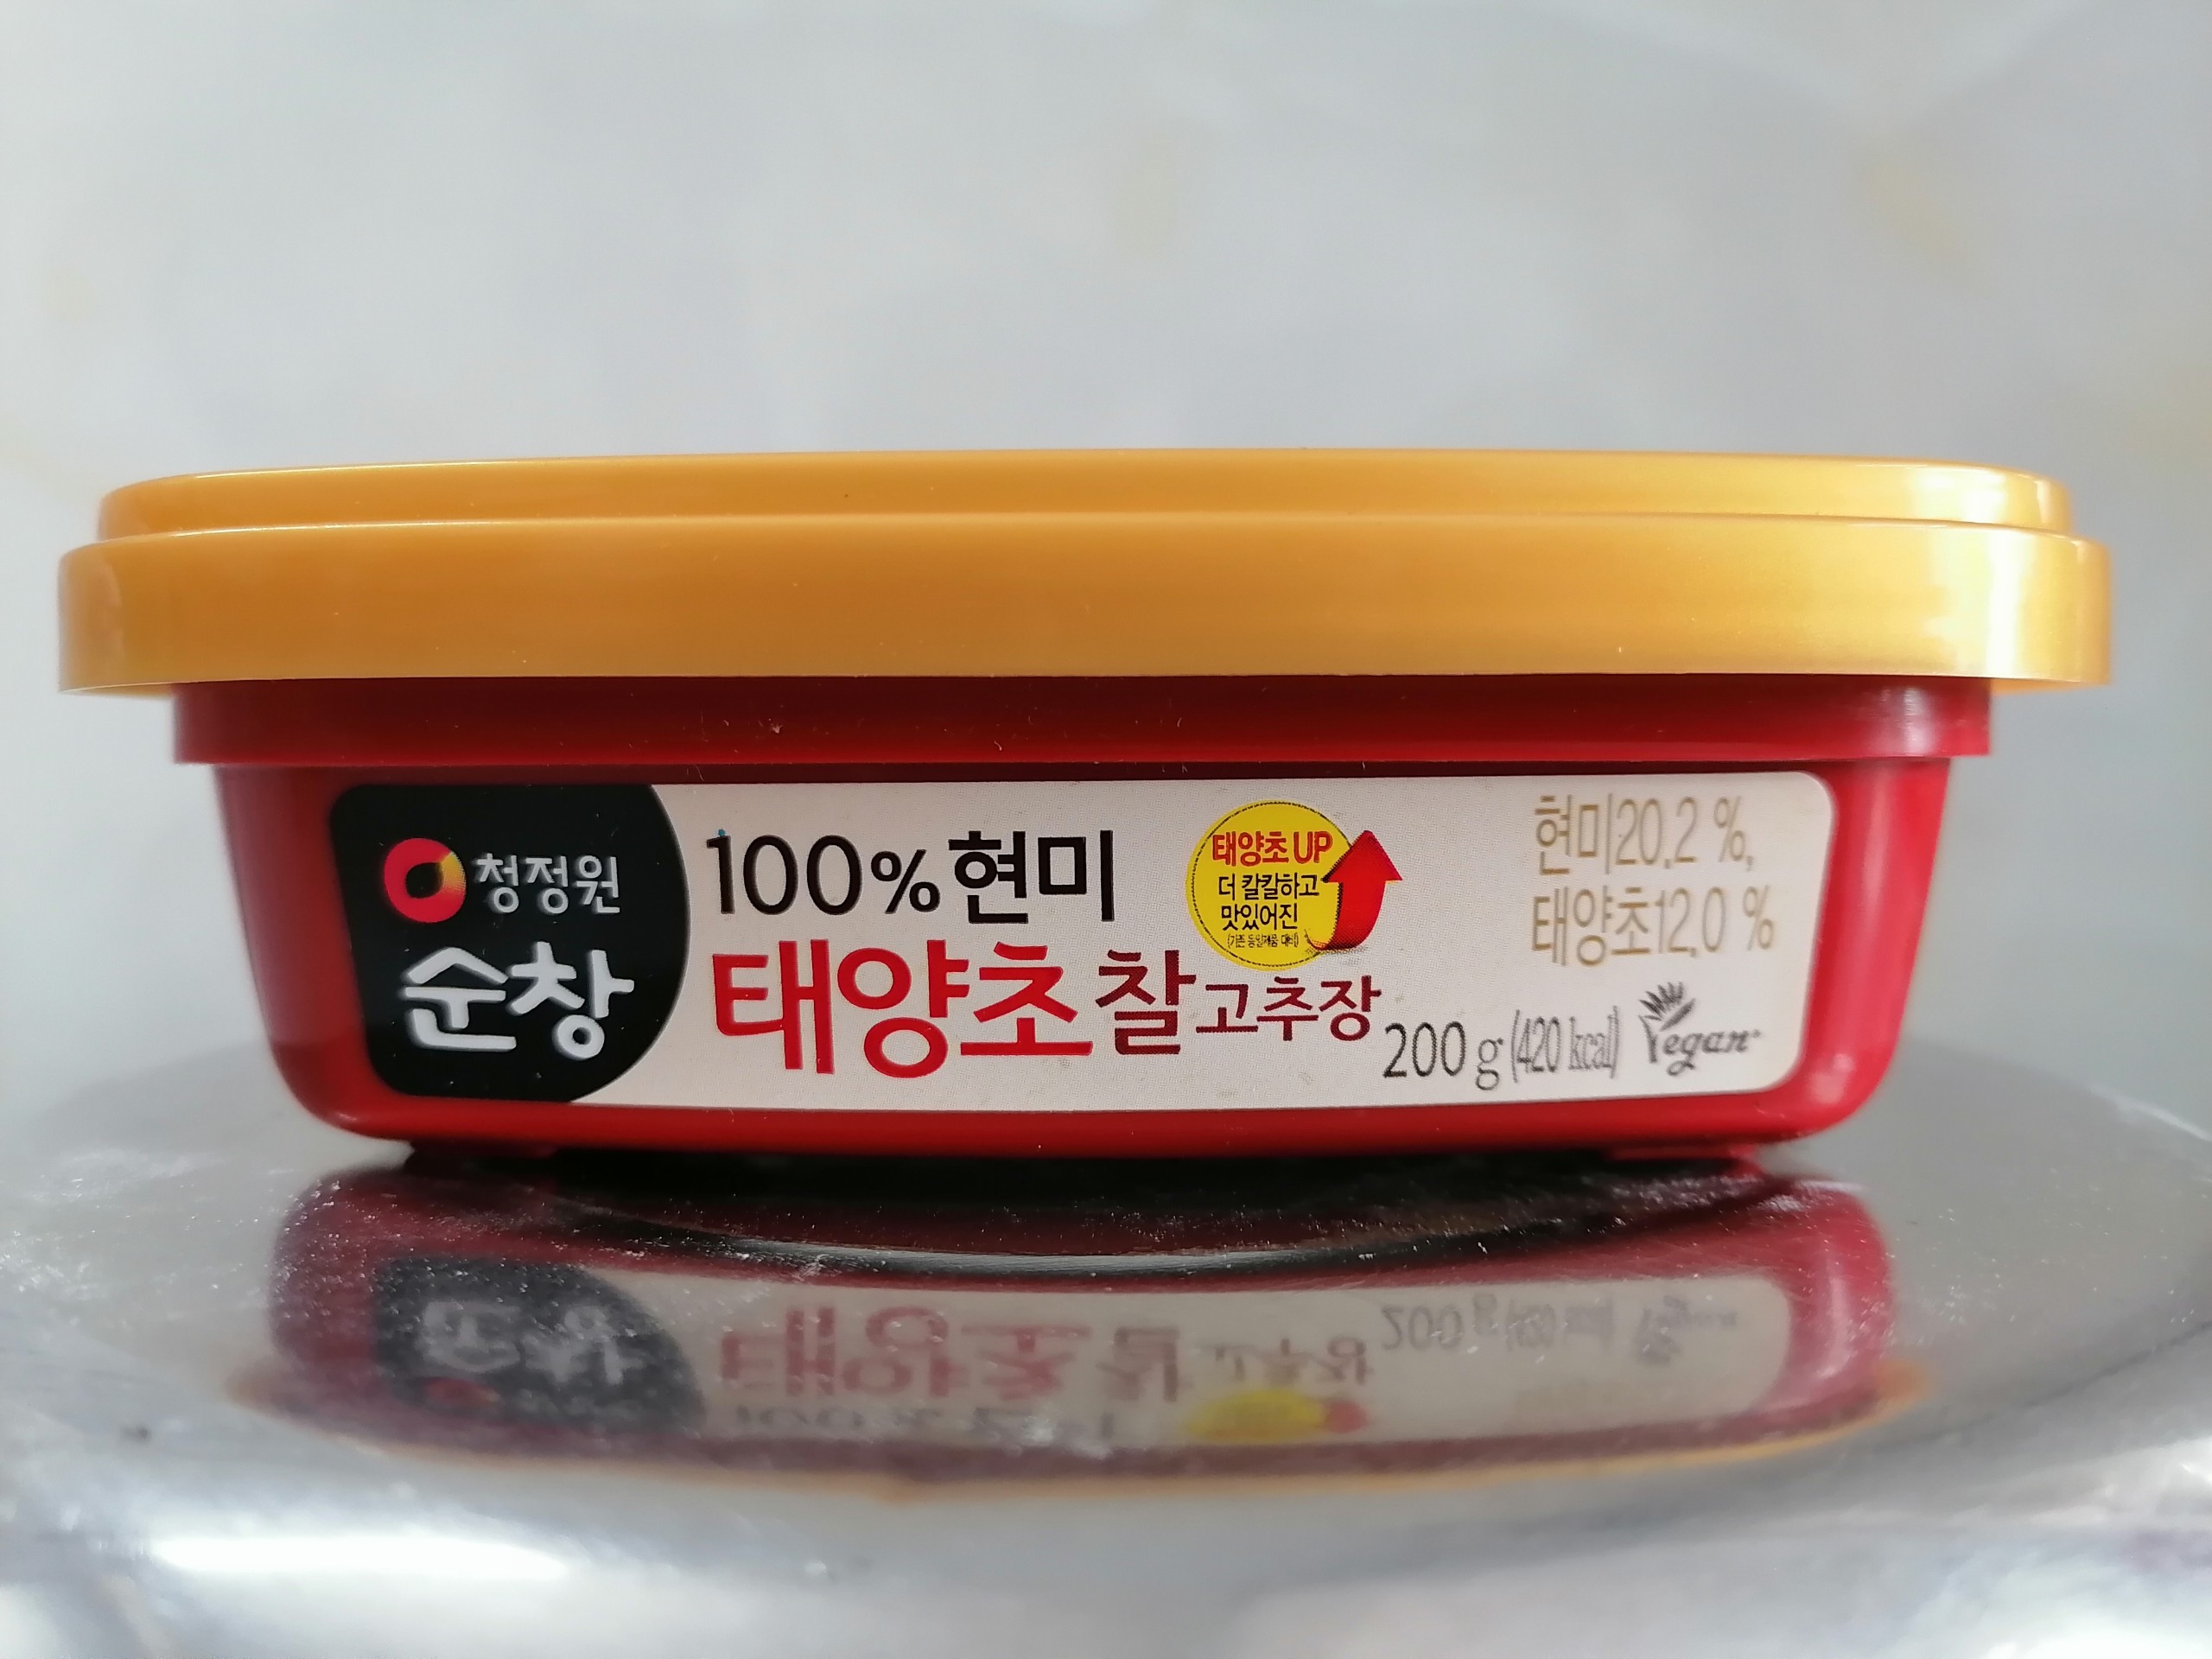 Hsd exp 23 6 2022 hộp nhỏ 200g đỏ tương ớt gạo lứt hàn quốc daesang korea - ảnh sản phẩm 2